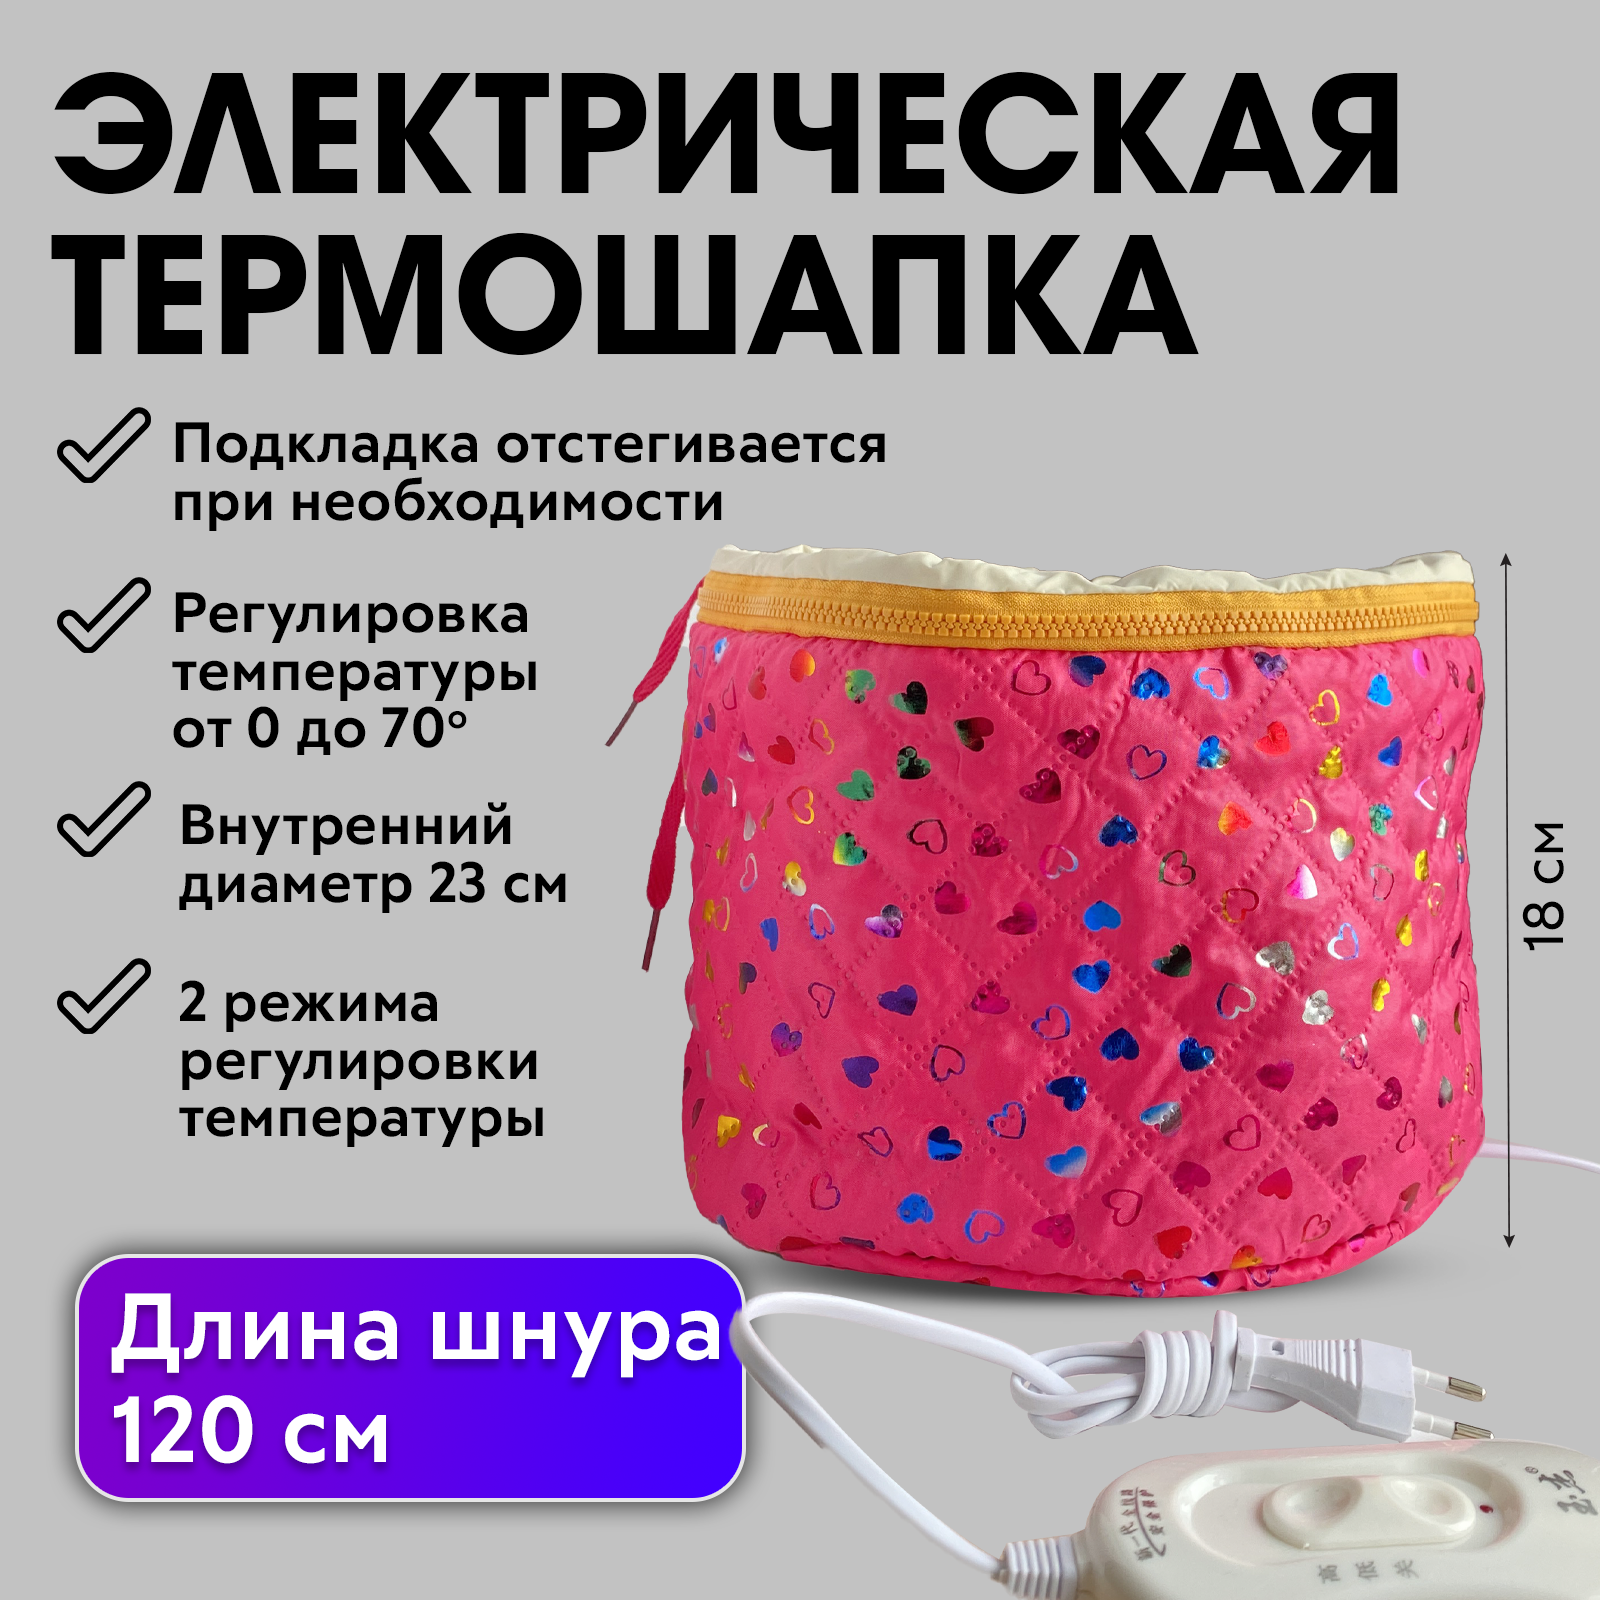 Термошапка Charites для волос электрическая воротник лоток на шею charites для окрашивания и химической завивки полиуретановый розовый